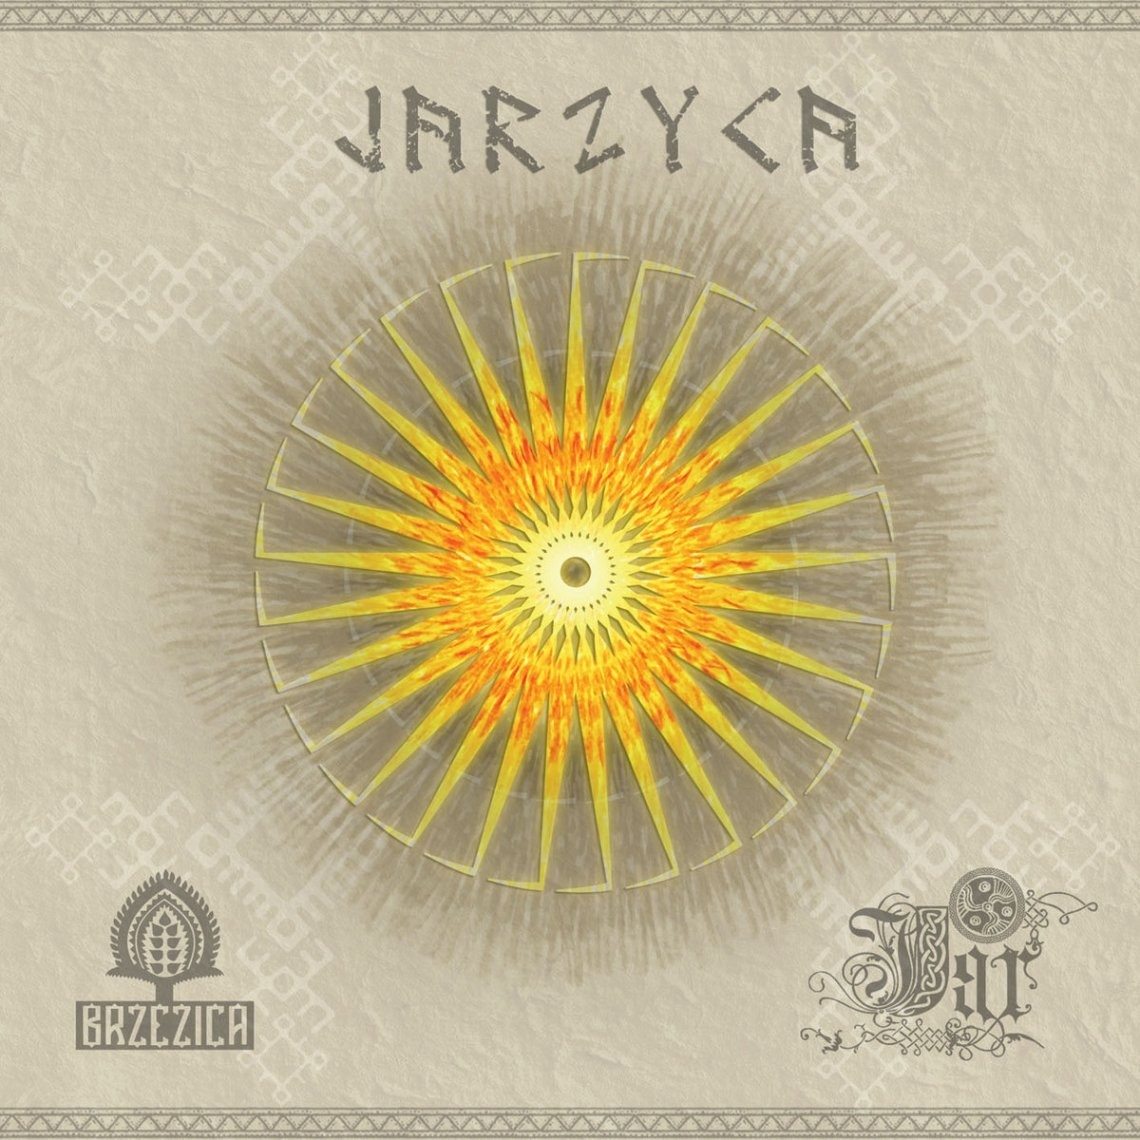 Jar & Brzezica – Jarzyca